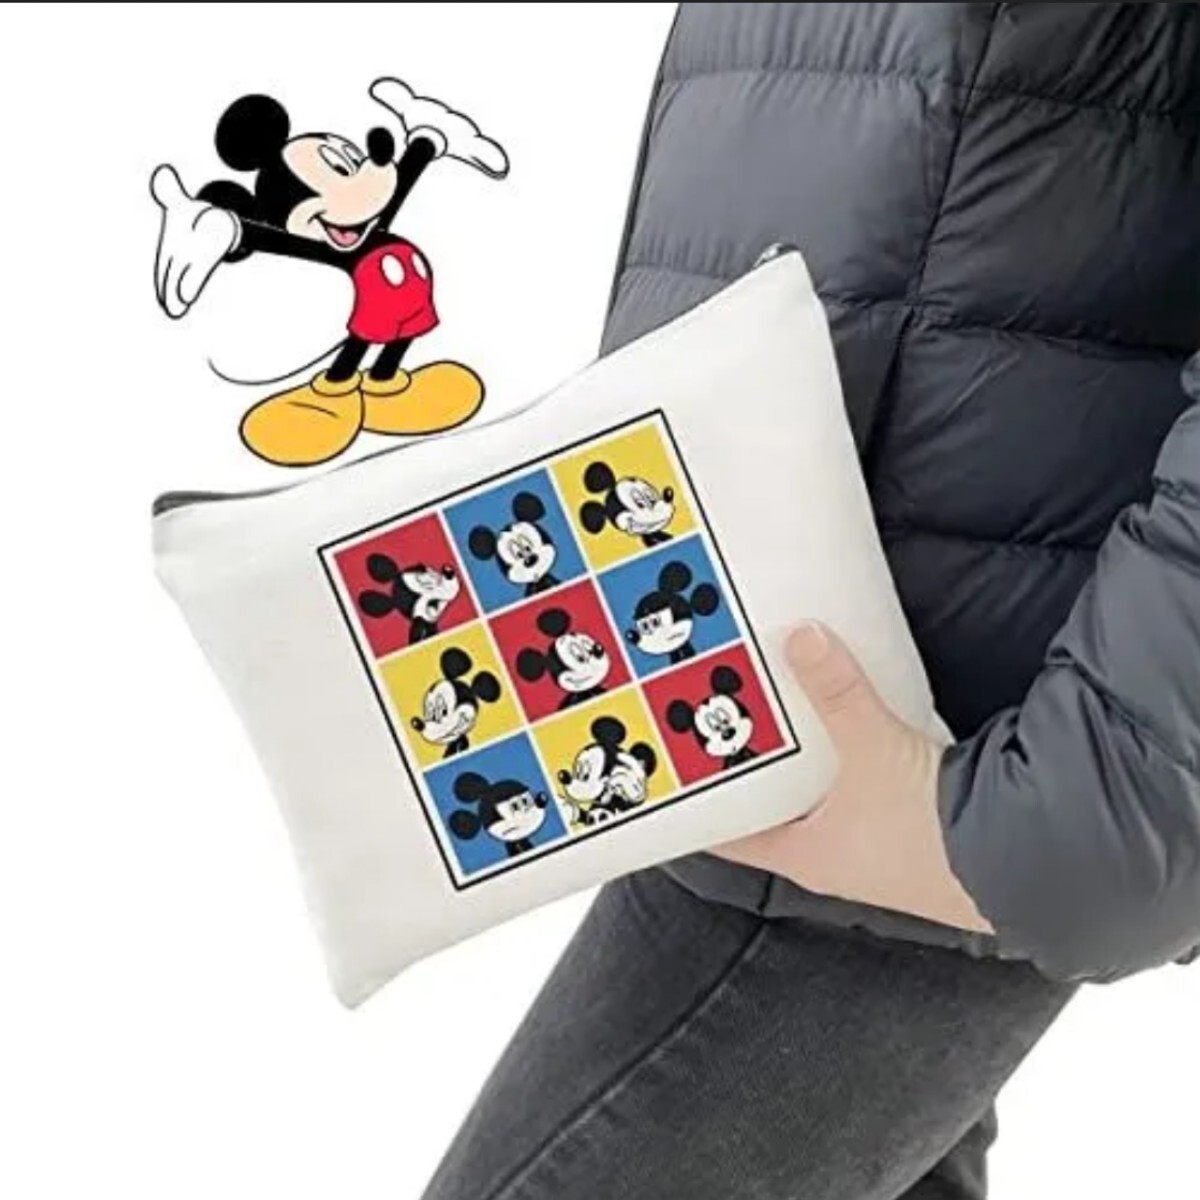  товар ограничен! сумка Mickey Mouse косметичка Mini сумка место хранения сумка функциональный большая вместимость Disney легкий перевозка путешествие для дорожная сумка 